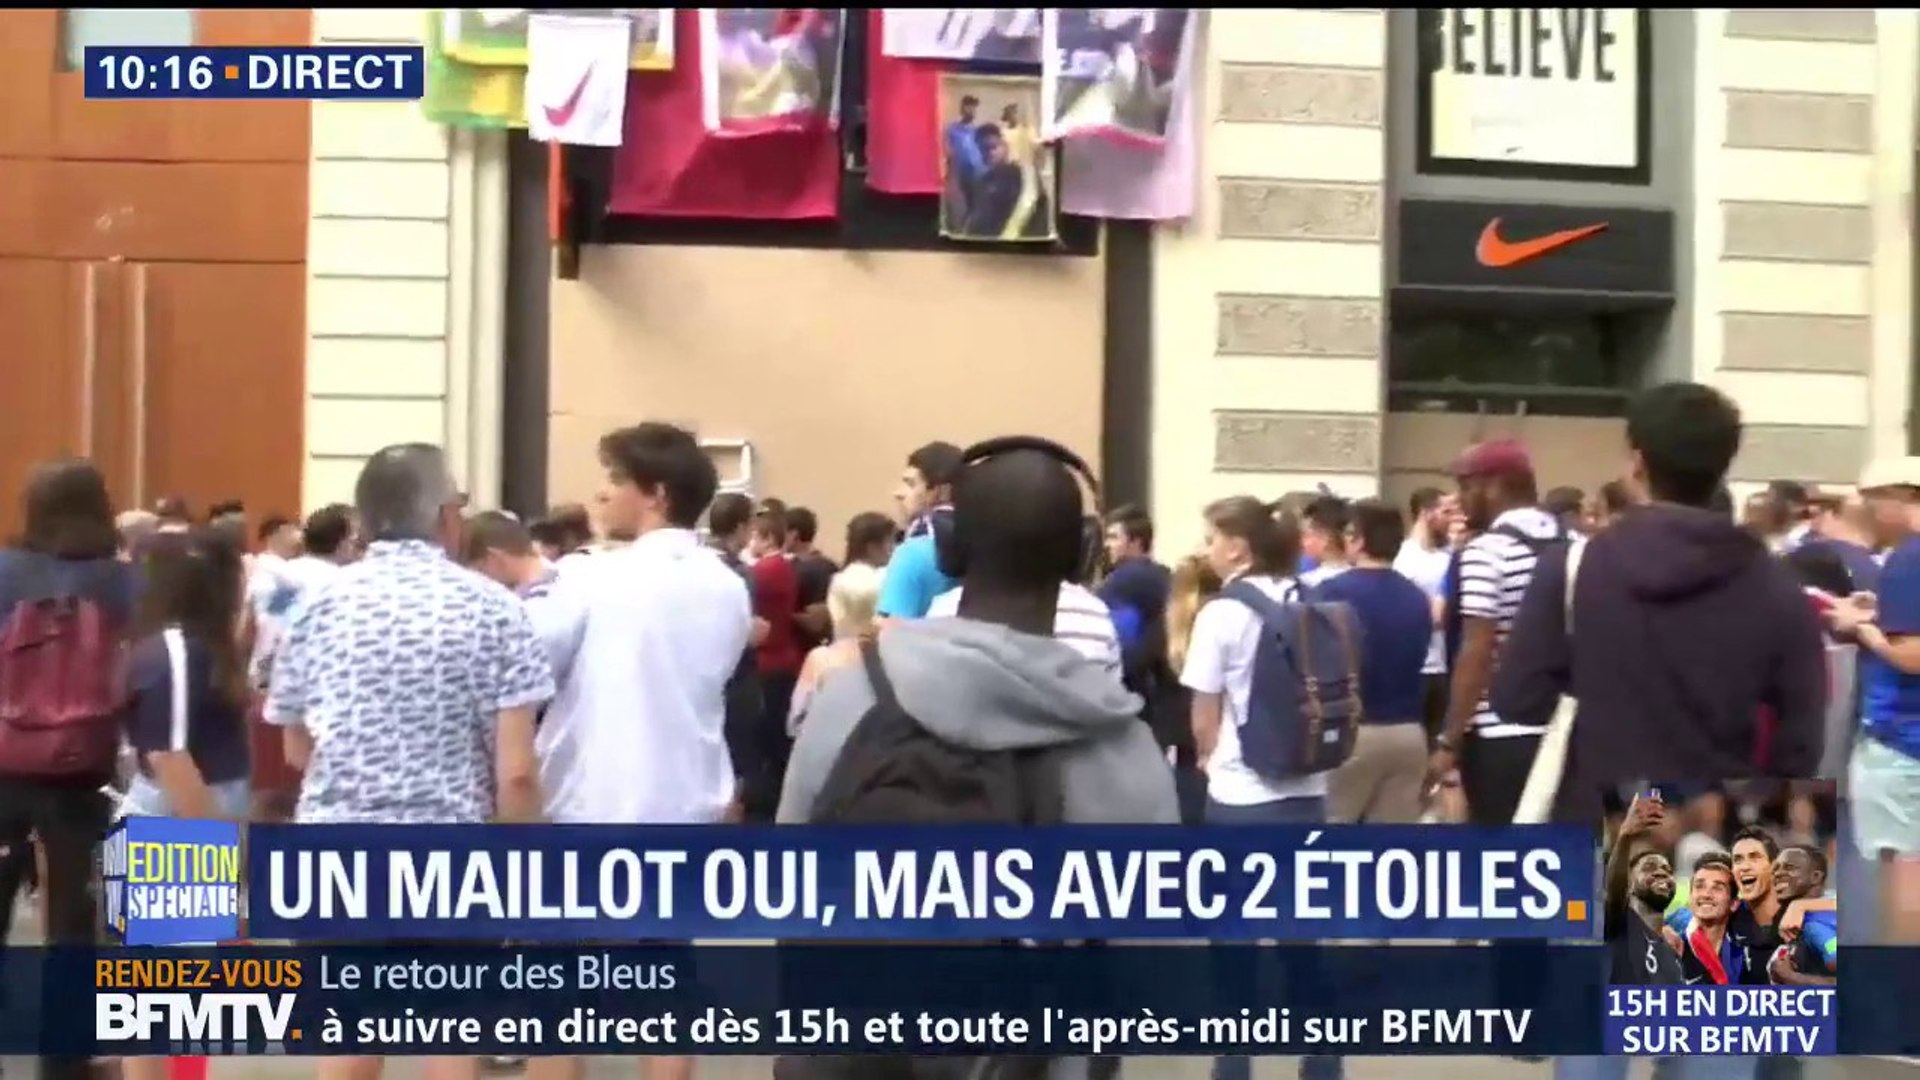 La boutique Nike des Champs-Elysées est fermée, les supporters campent  devant pour avoir le maillot aux deux étoiles - Vidéo Dailymotion